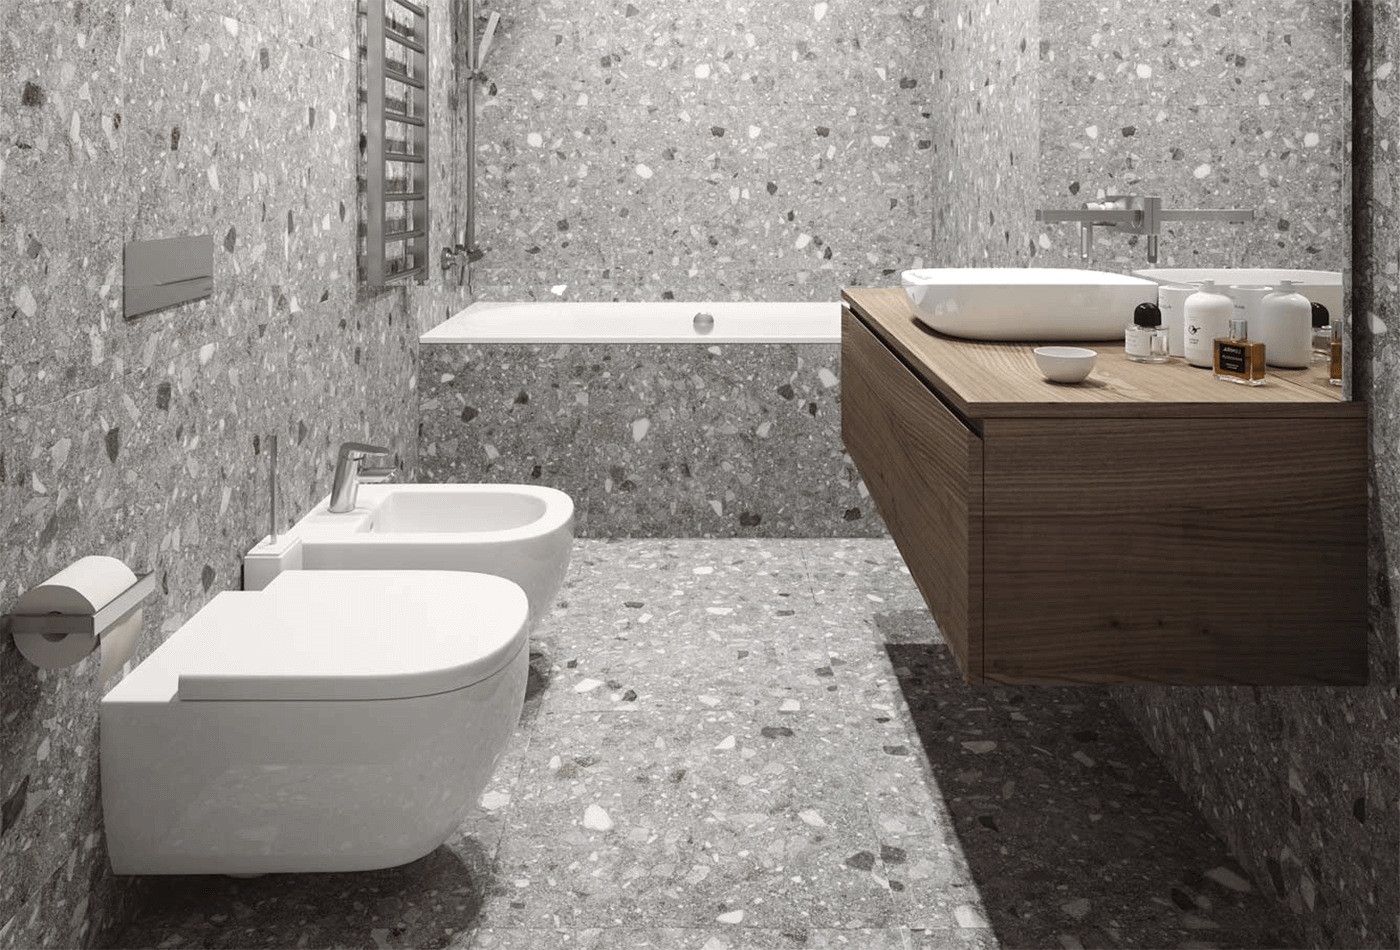 Terrazzo Tile; Eloquent Fashion for Bathroom Decor!